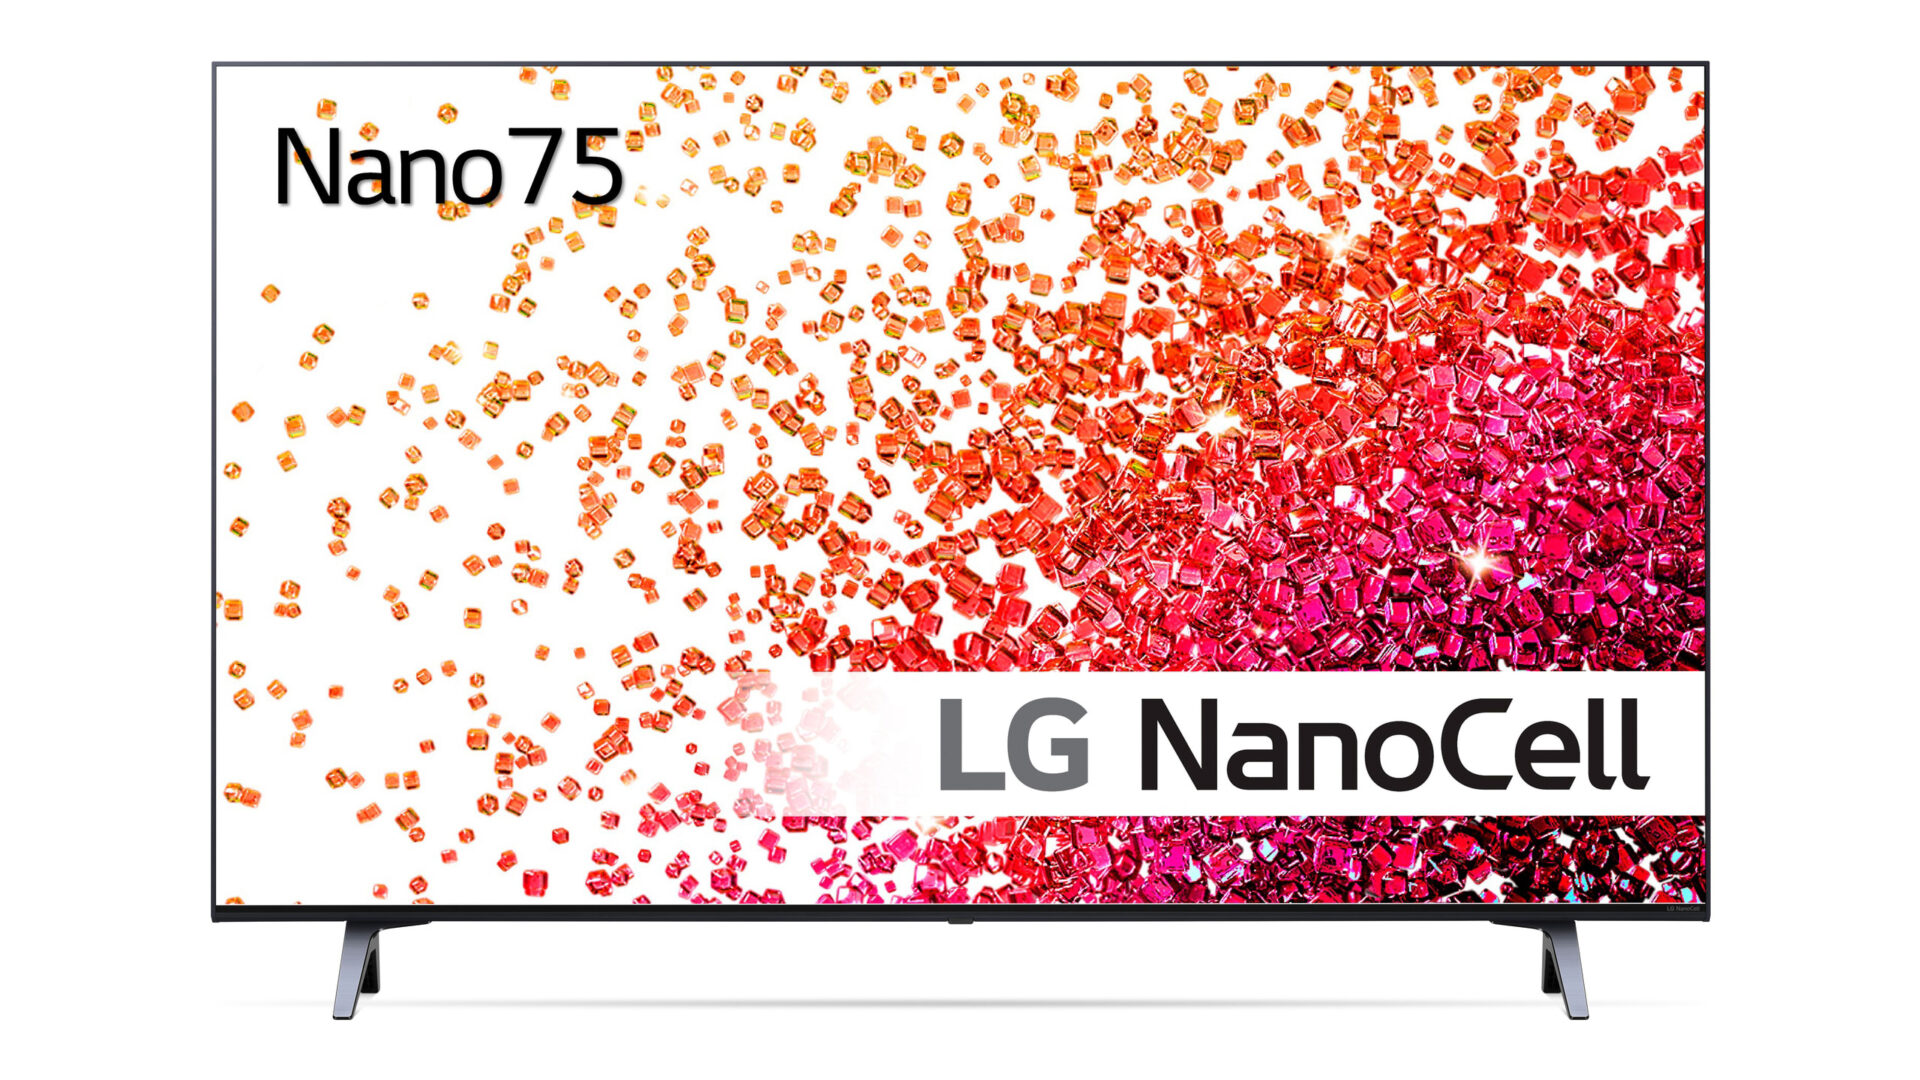 LG NANO756 spread